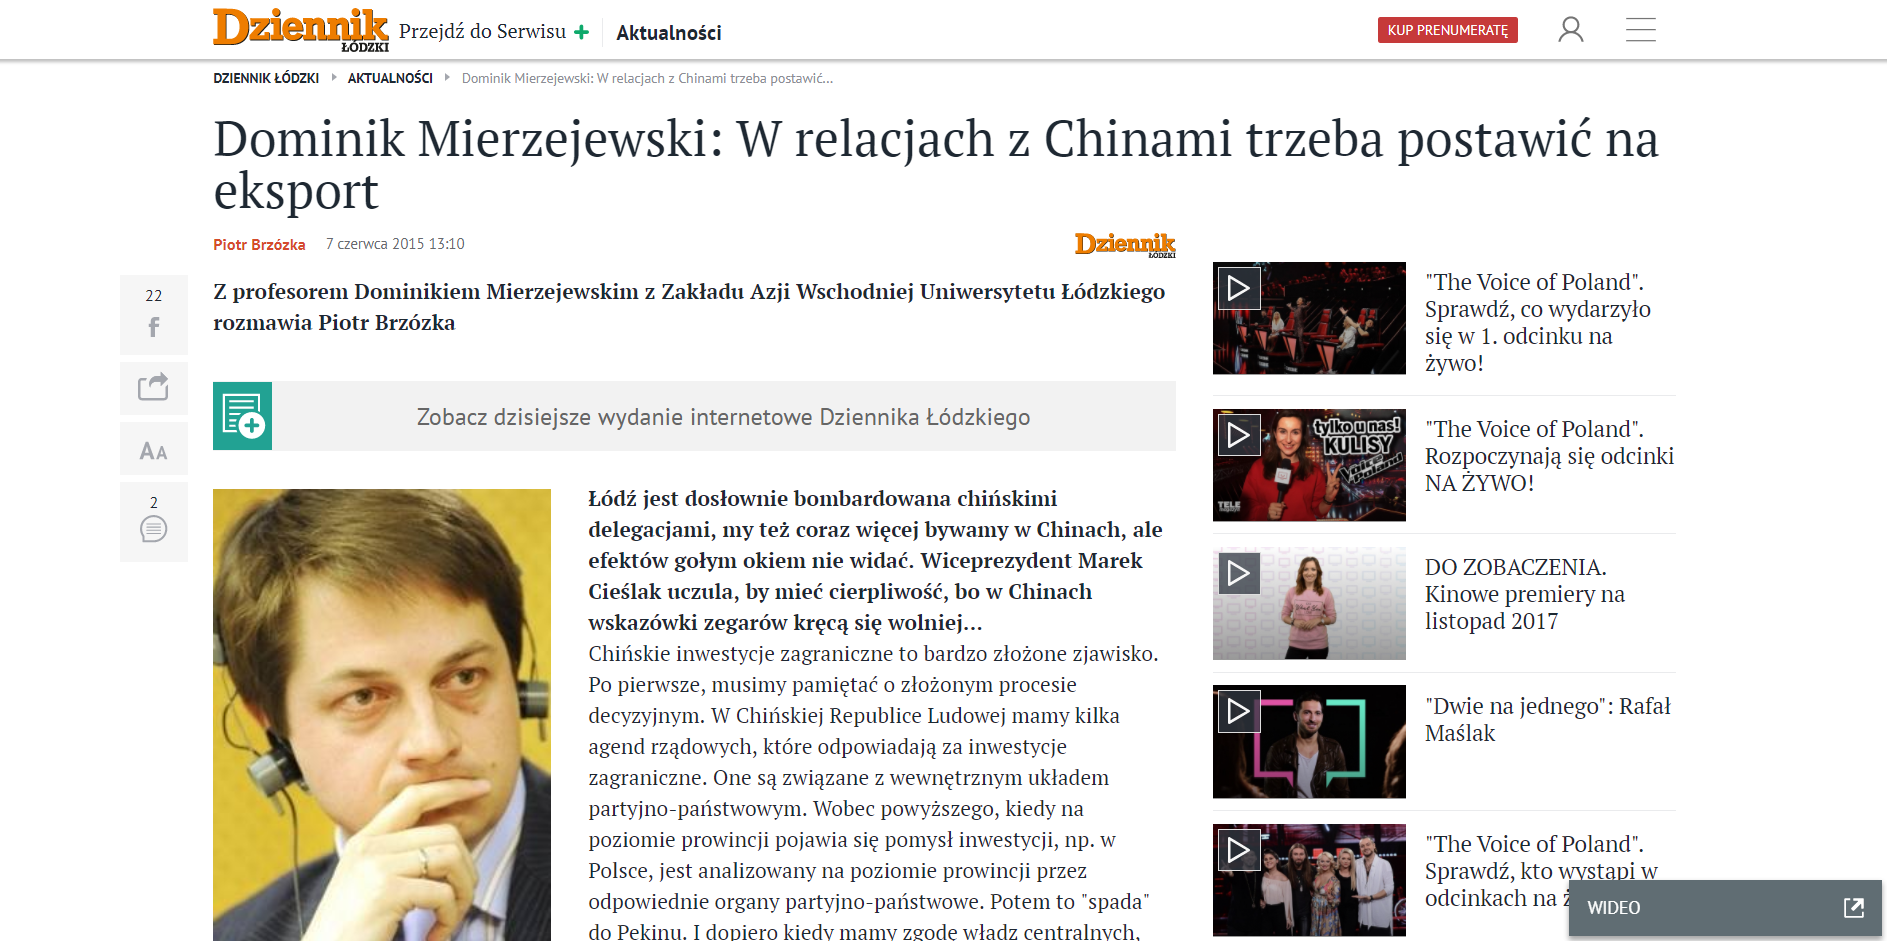 Zrzut ekranu strony internetowej Dziennika Łódzkiego/Screenshot of the Dziennik Łódzki website